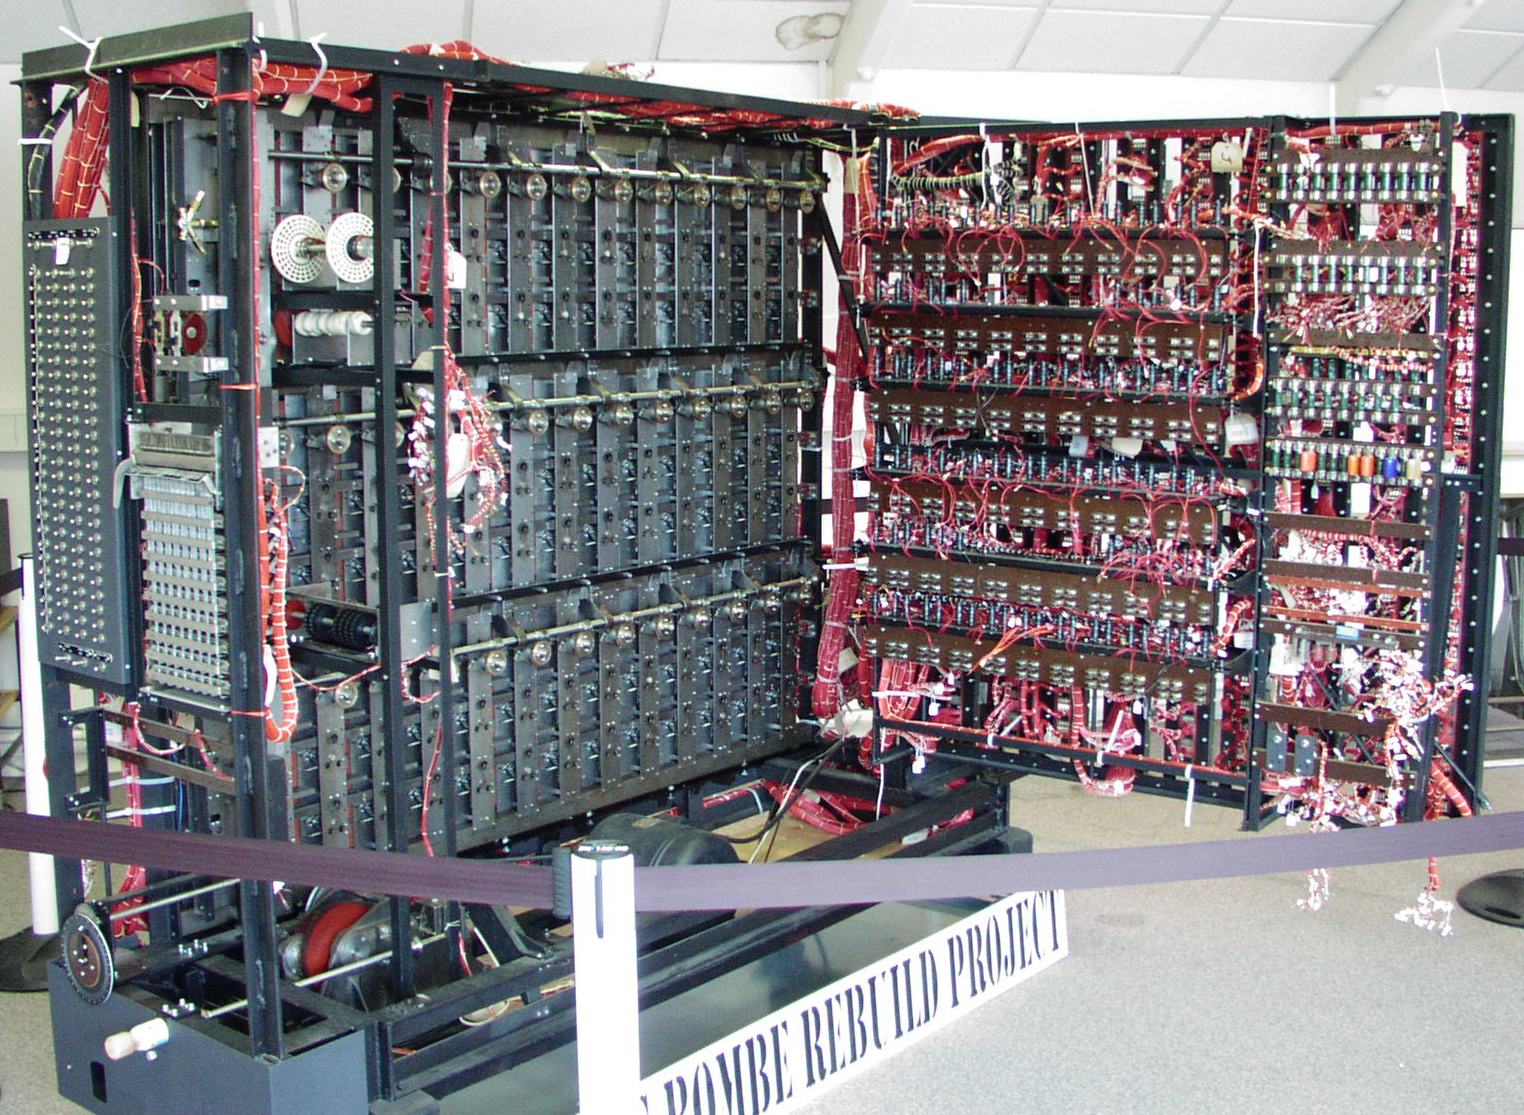  Alan Turing kódtörő számítógépének újjáépítése, Bombe